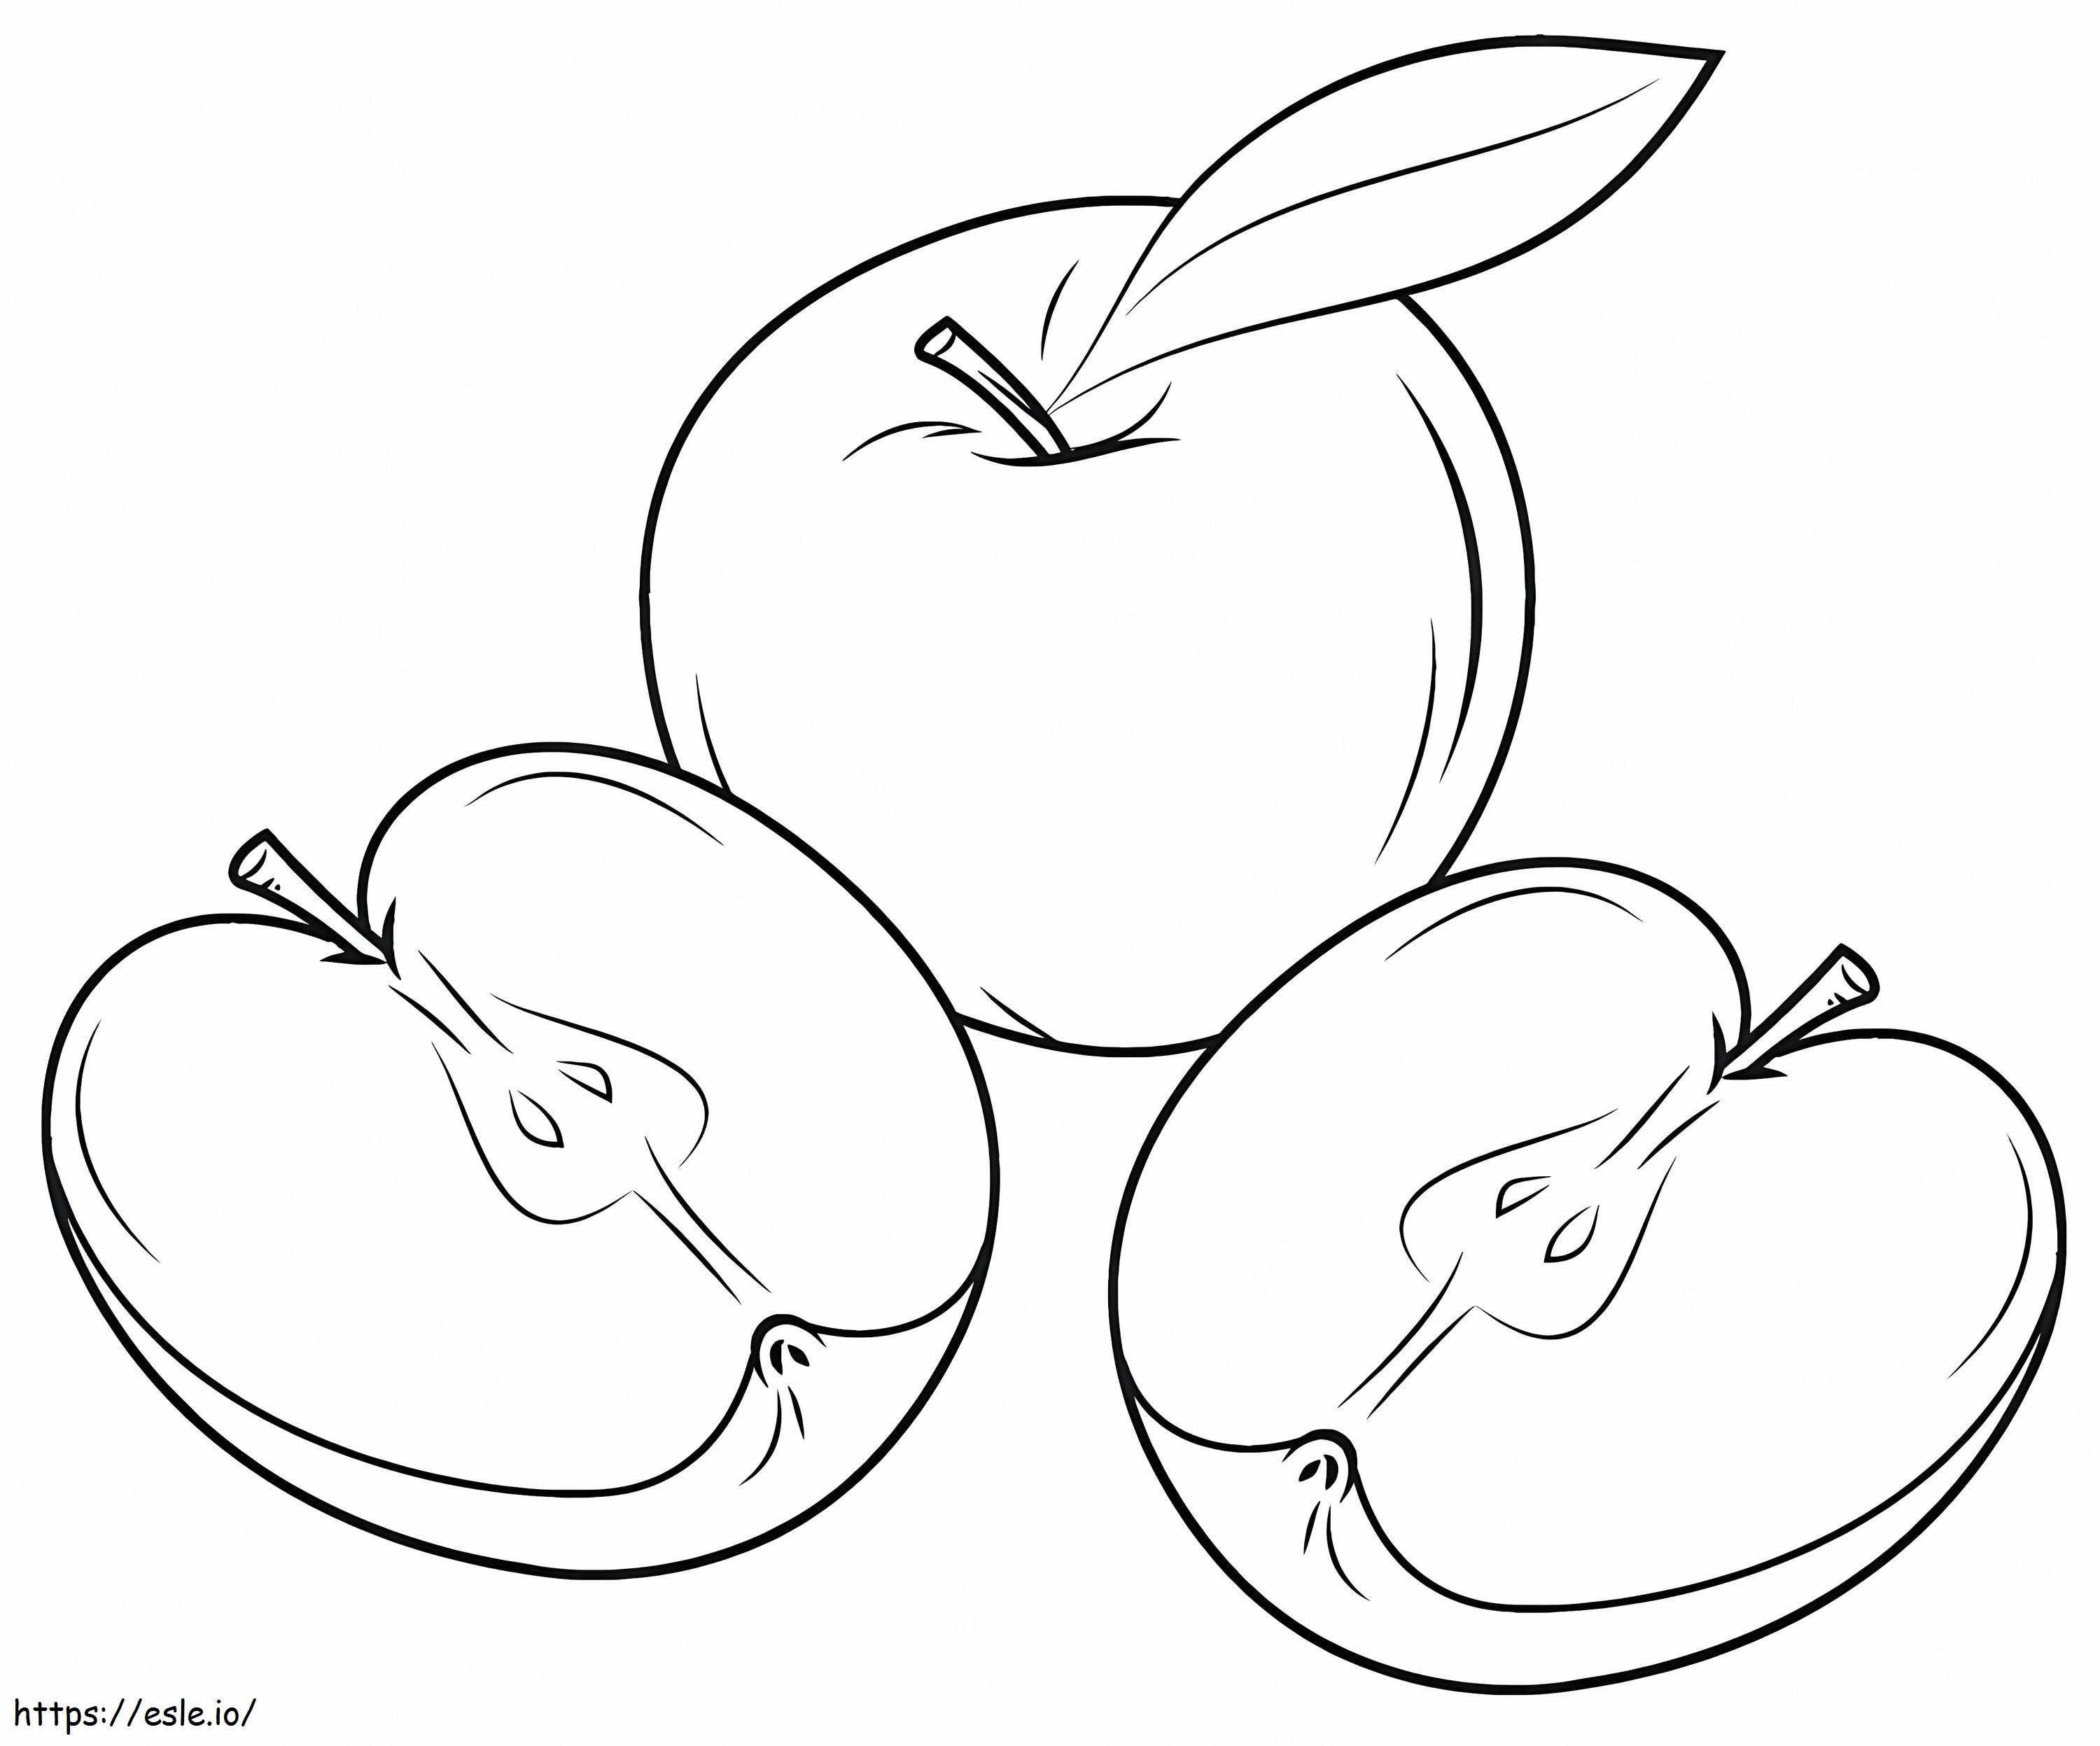 Coloriage Une pomme et deux tranches de pomme à imprimer dessin